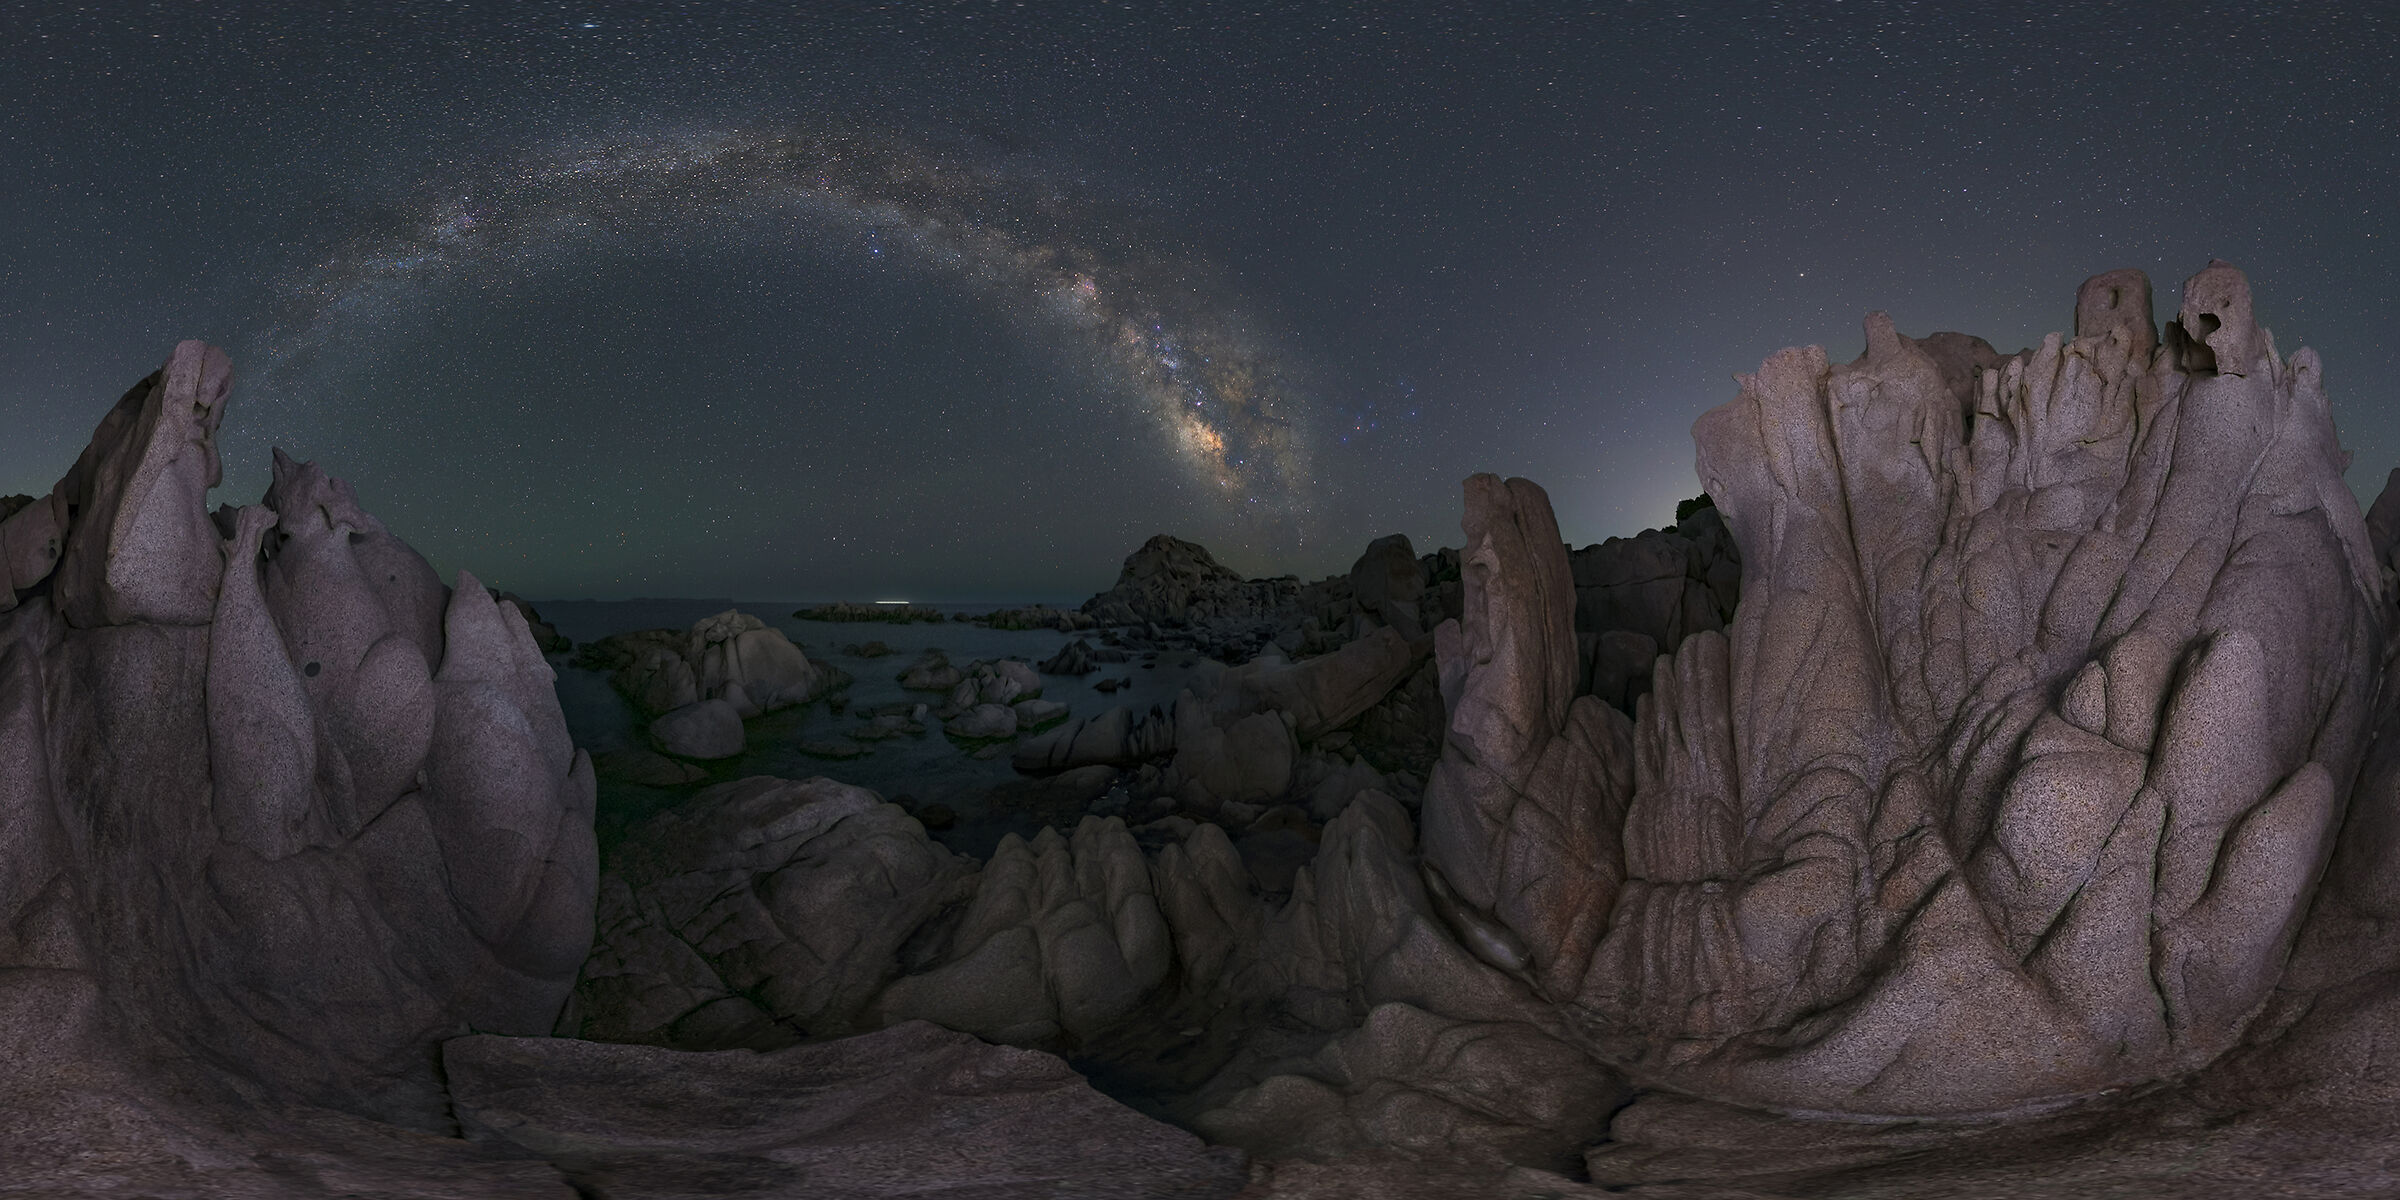 Sardinia Milky Way...